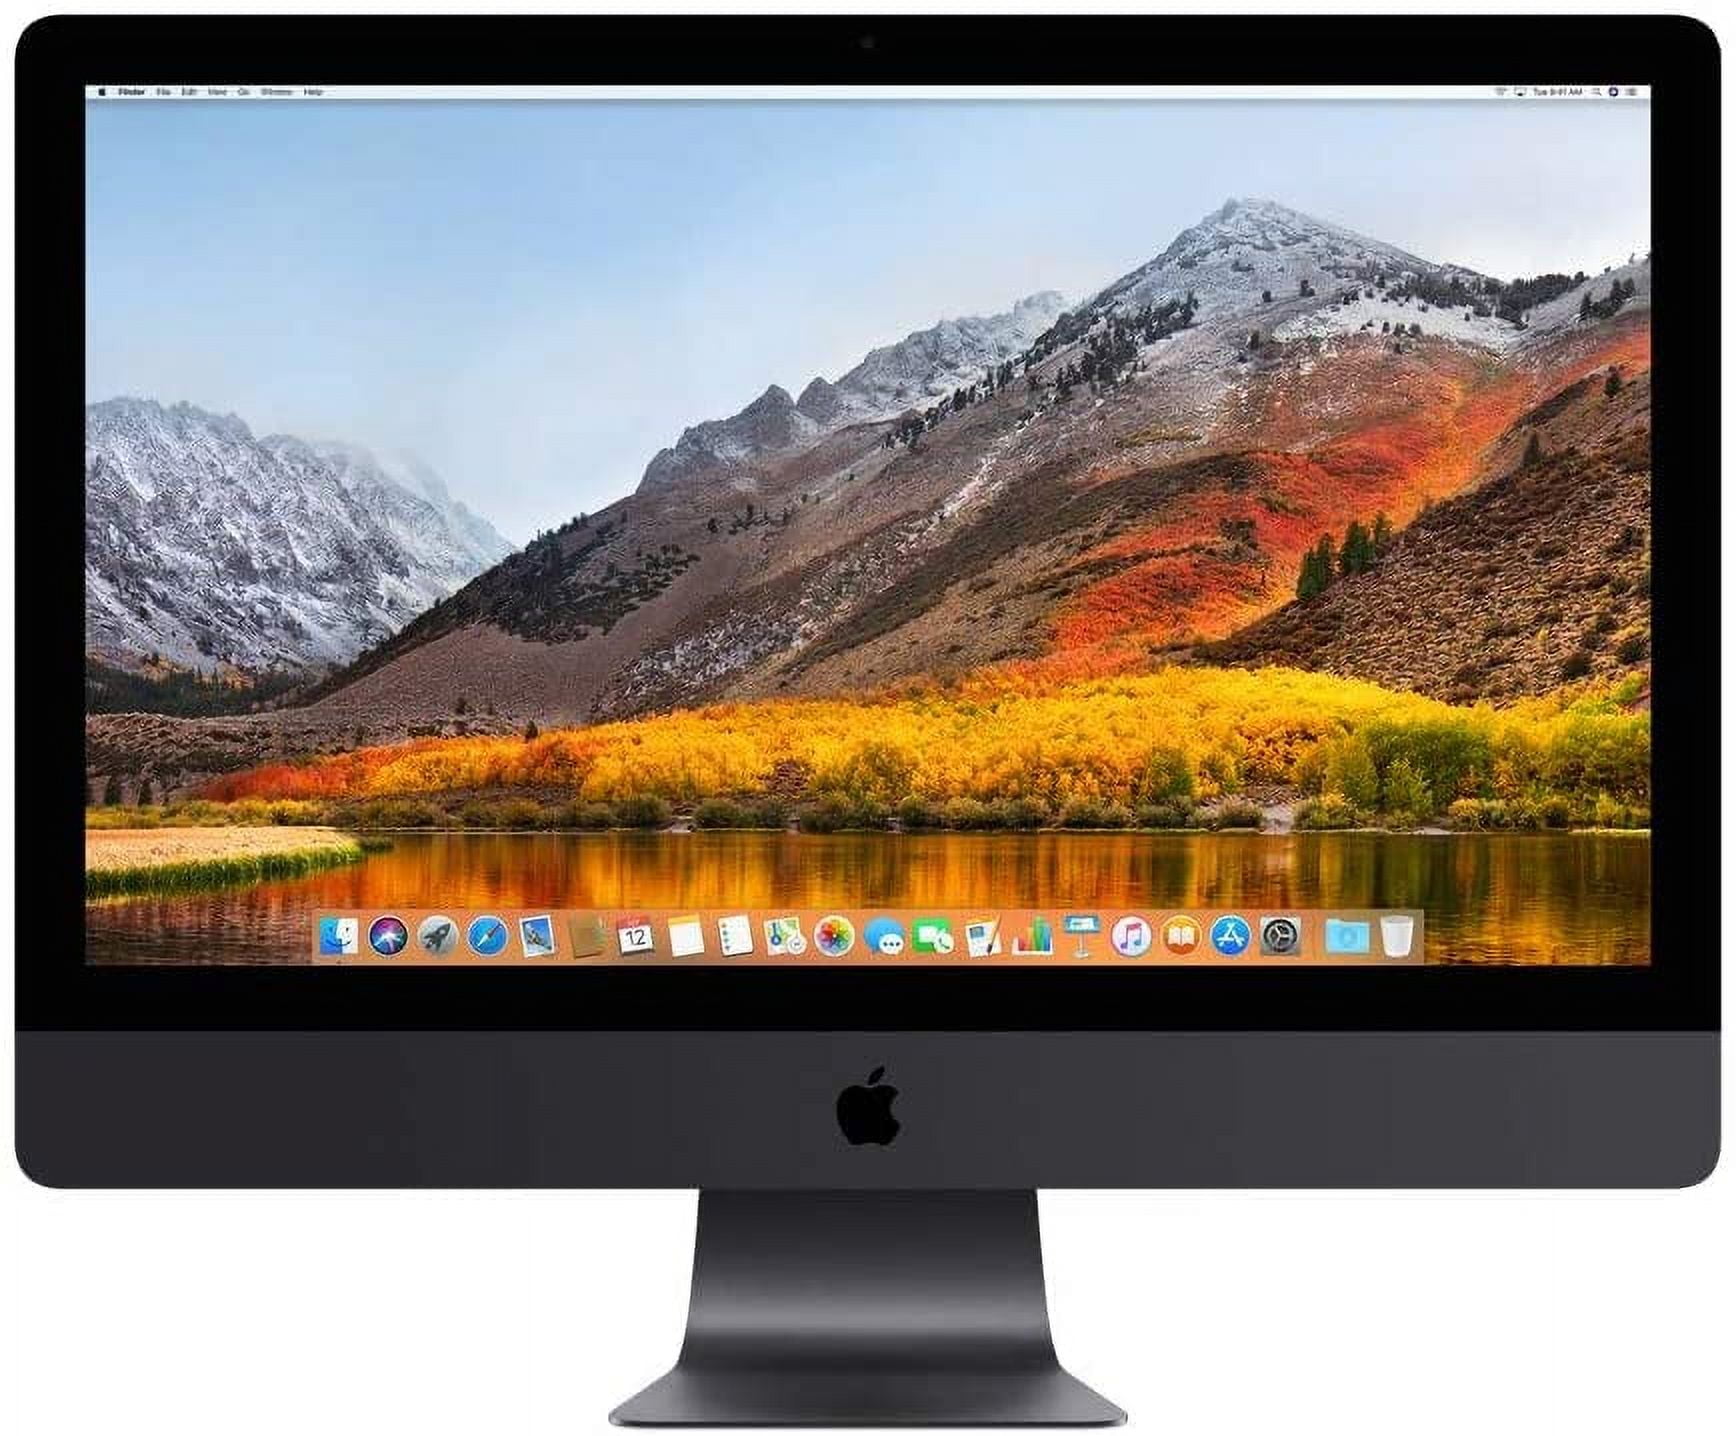 Apple iMac Pro 27in All-in-One Desktop,Intel,32 GB, Space Gray (MQ2Y2LL/A)  (Renewed)1000 GB,macOS High Sierra